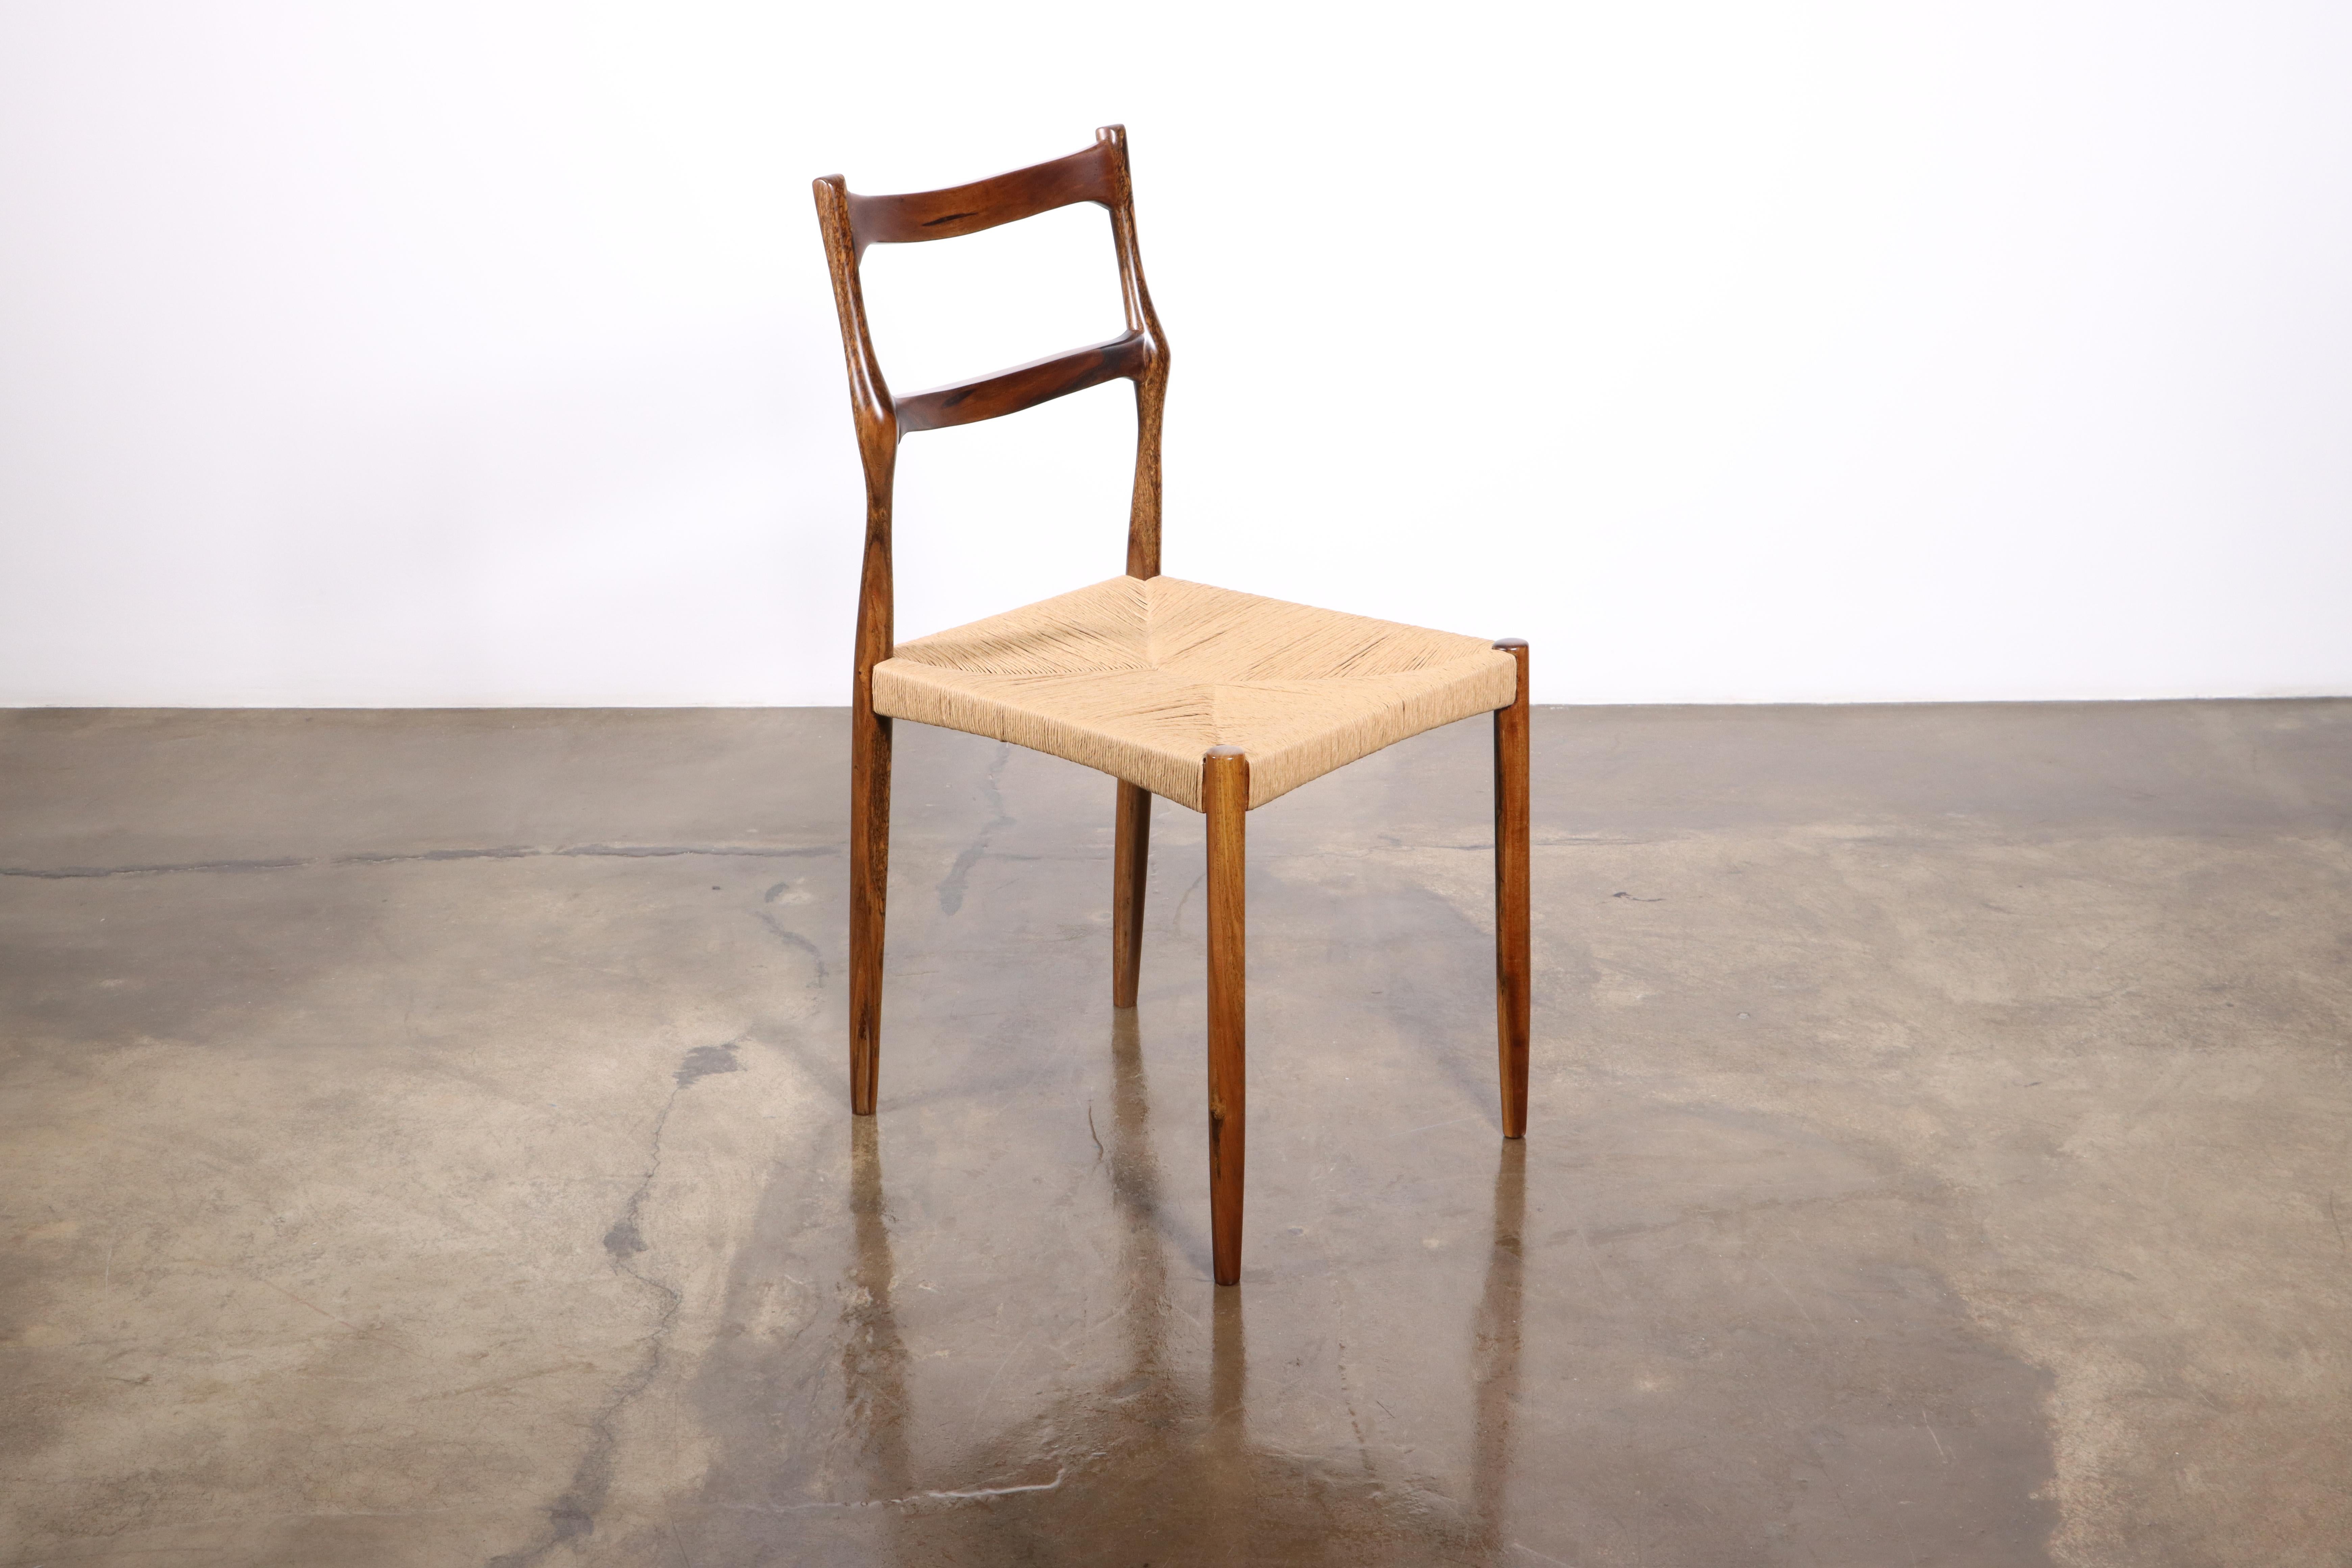 Liviana est une chaise de salle à manger à dossier latté en bois sculpté avec une assise en jonc tissé à la main de Costantini Design/One. 

Cette chaise est fabriquée sur commande et disponible telle qu'illustrée en palissandre d'Argentine ou dans